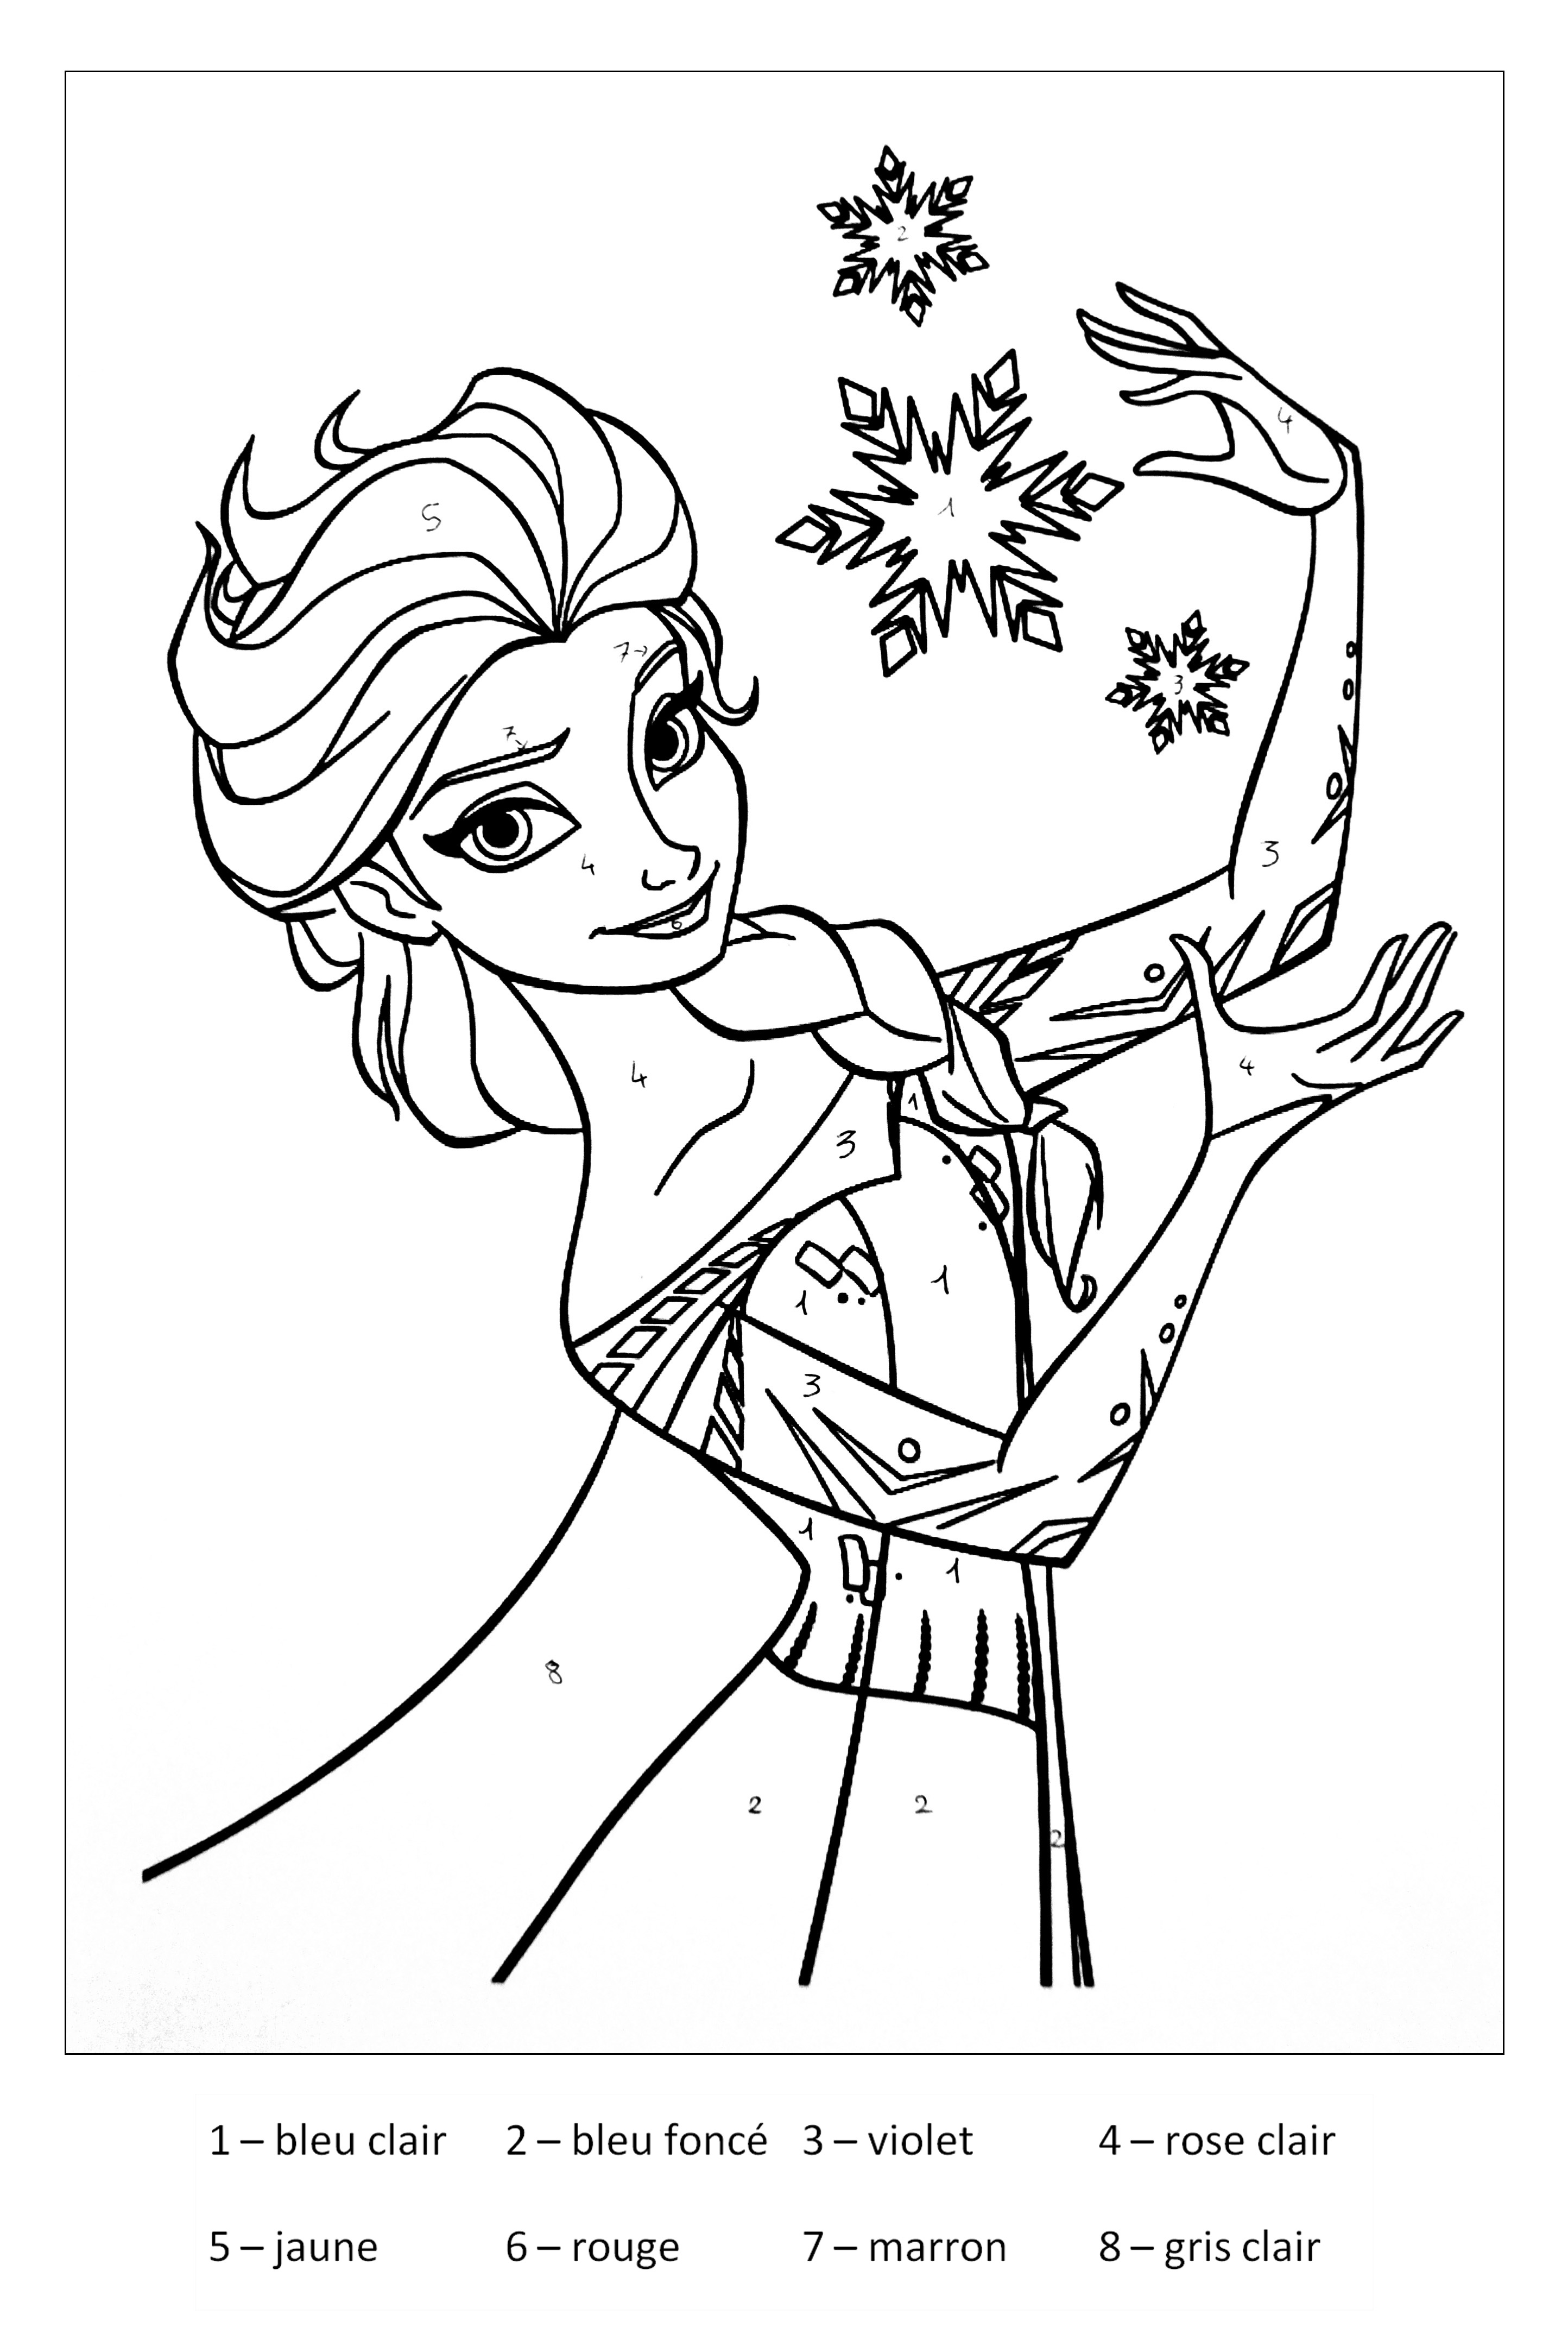 Coloriage de Elsa (La reine des neiges) à imprimer pour enfants